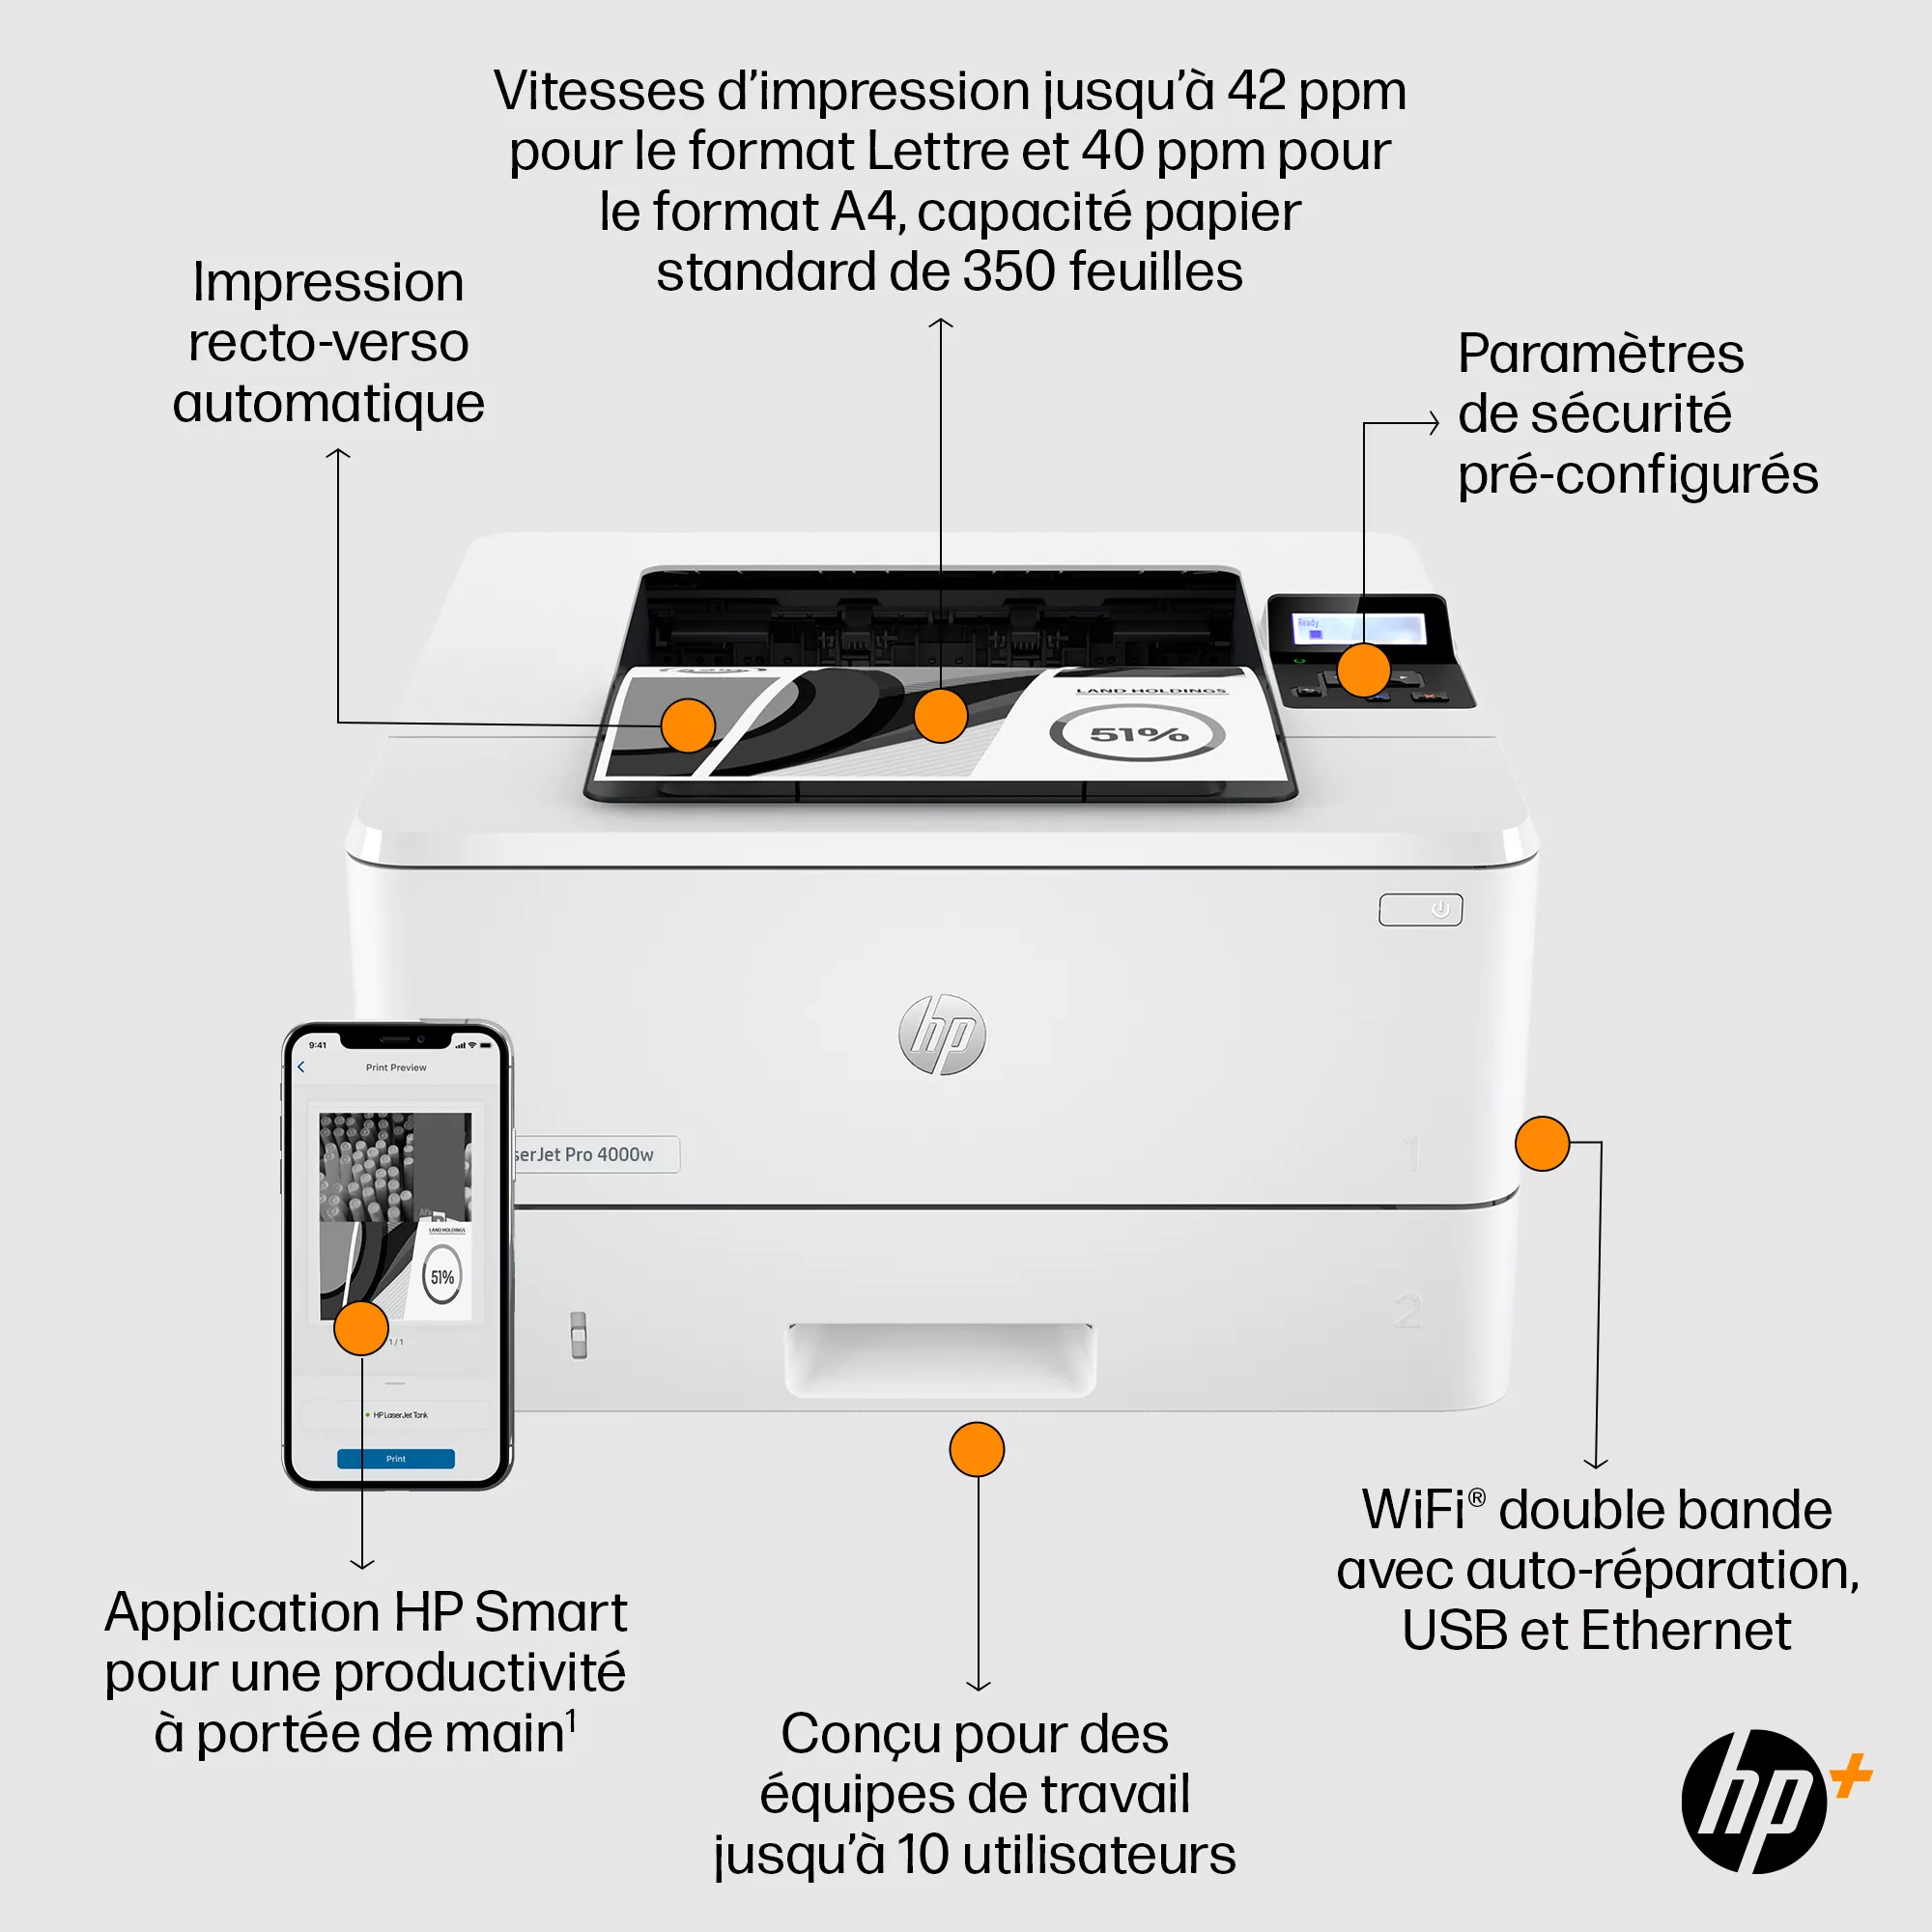 HP LaserJet Pro 4002dwe Printer up to 40ppm HP - visuel 1 - hello RSE - Configurez. Invitez des utilisateurs. Et c’est fait.